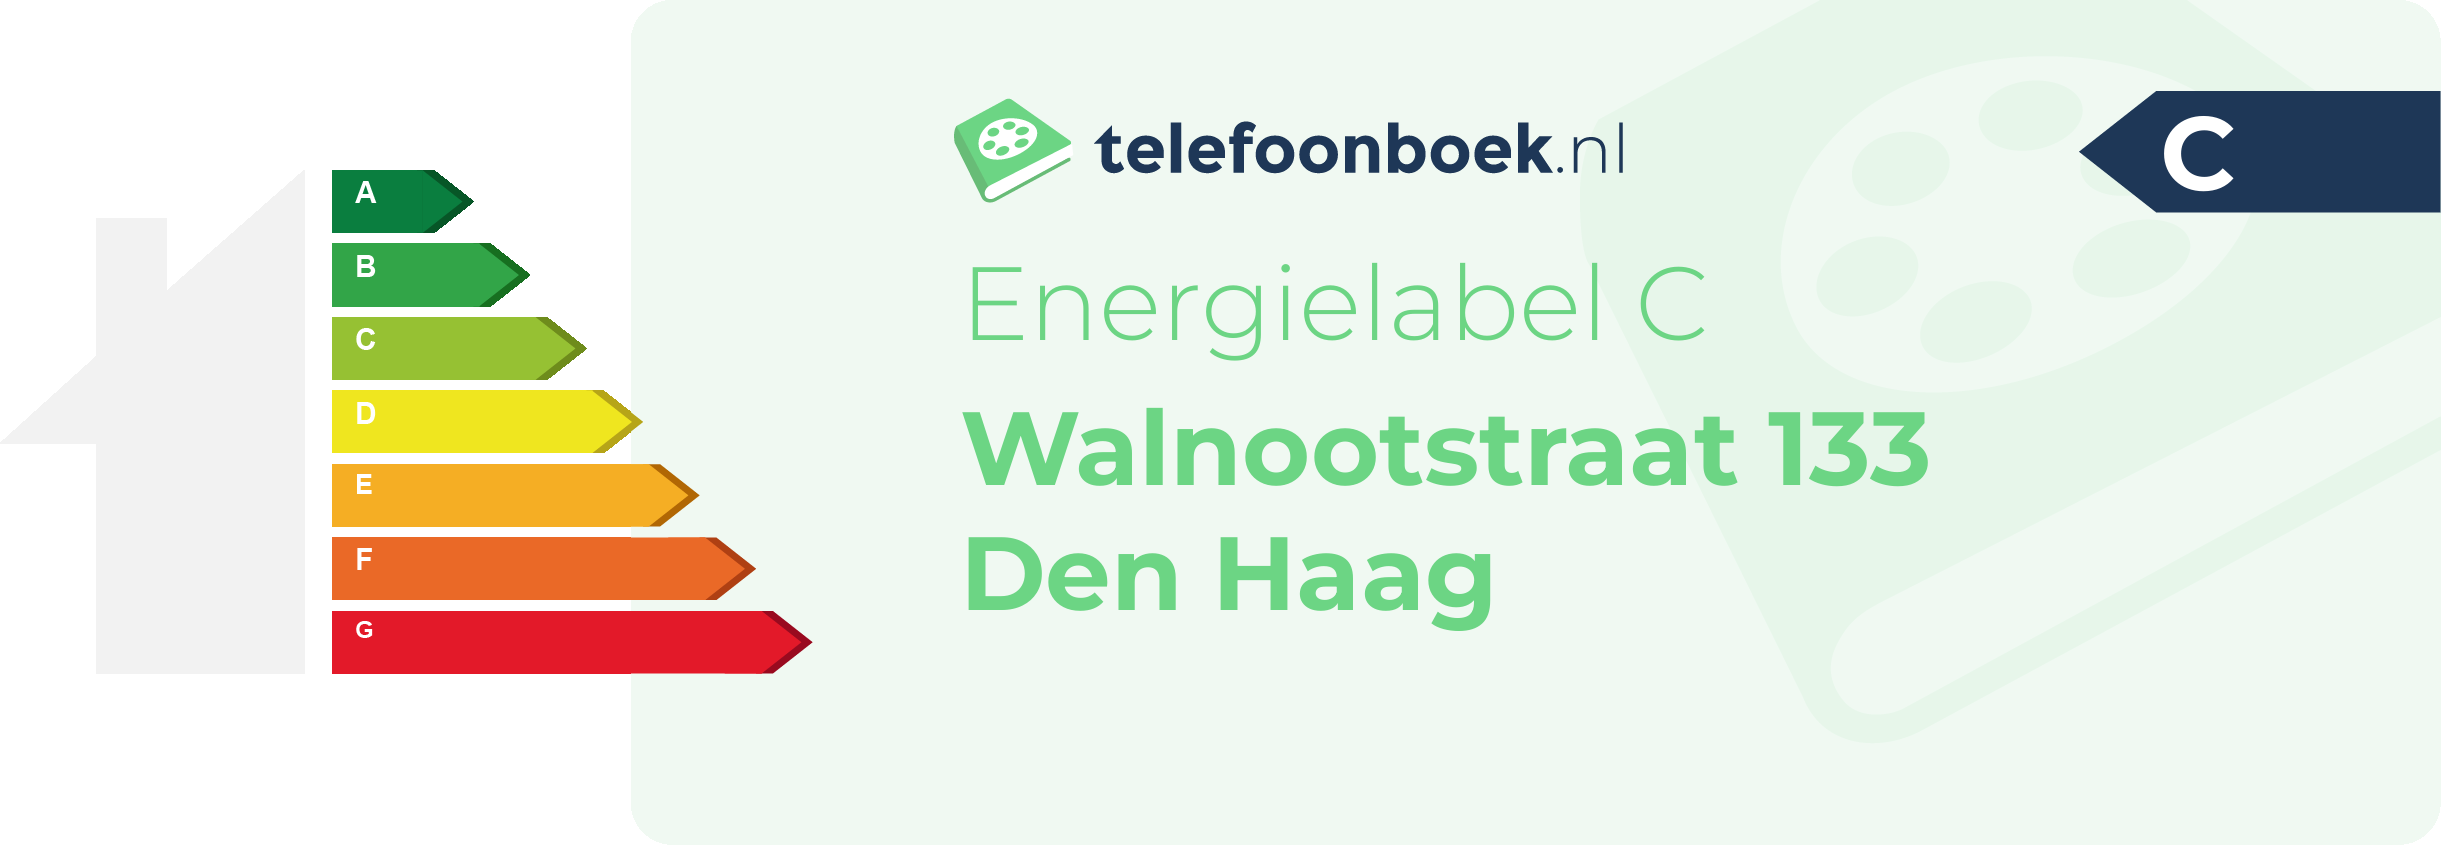 Energielabel Walnootstraat 133 Den Haag